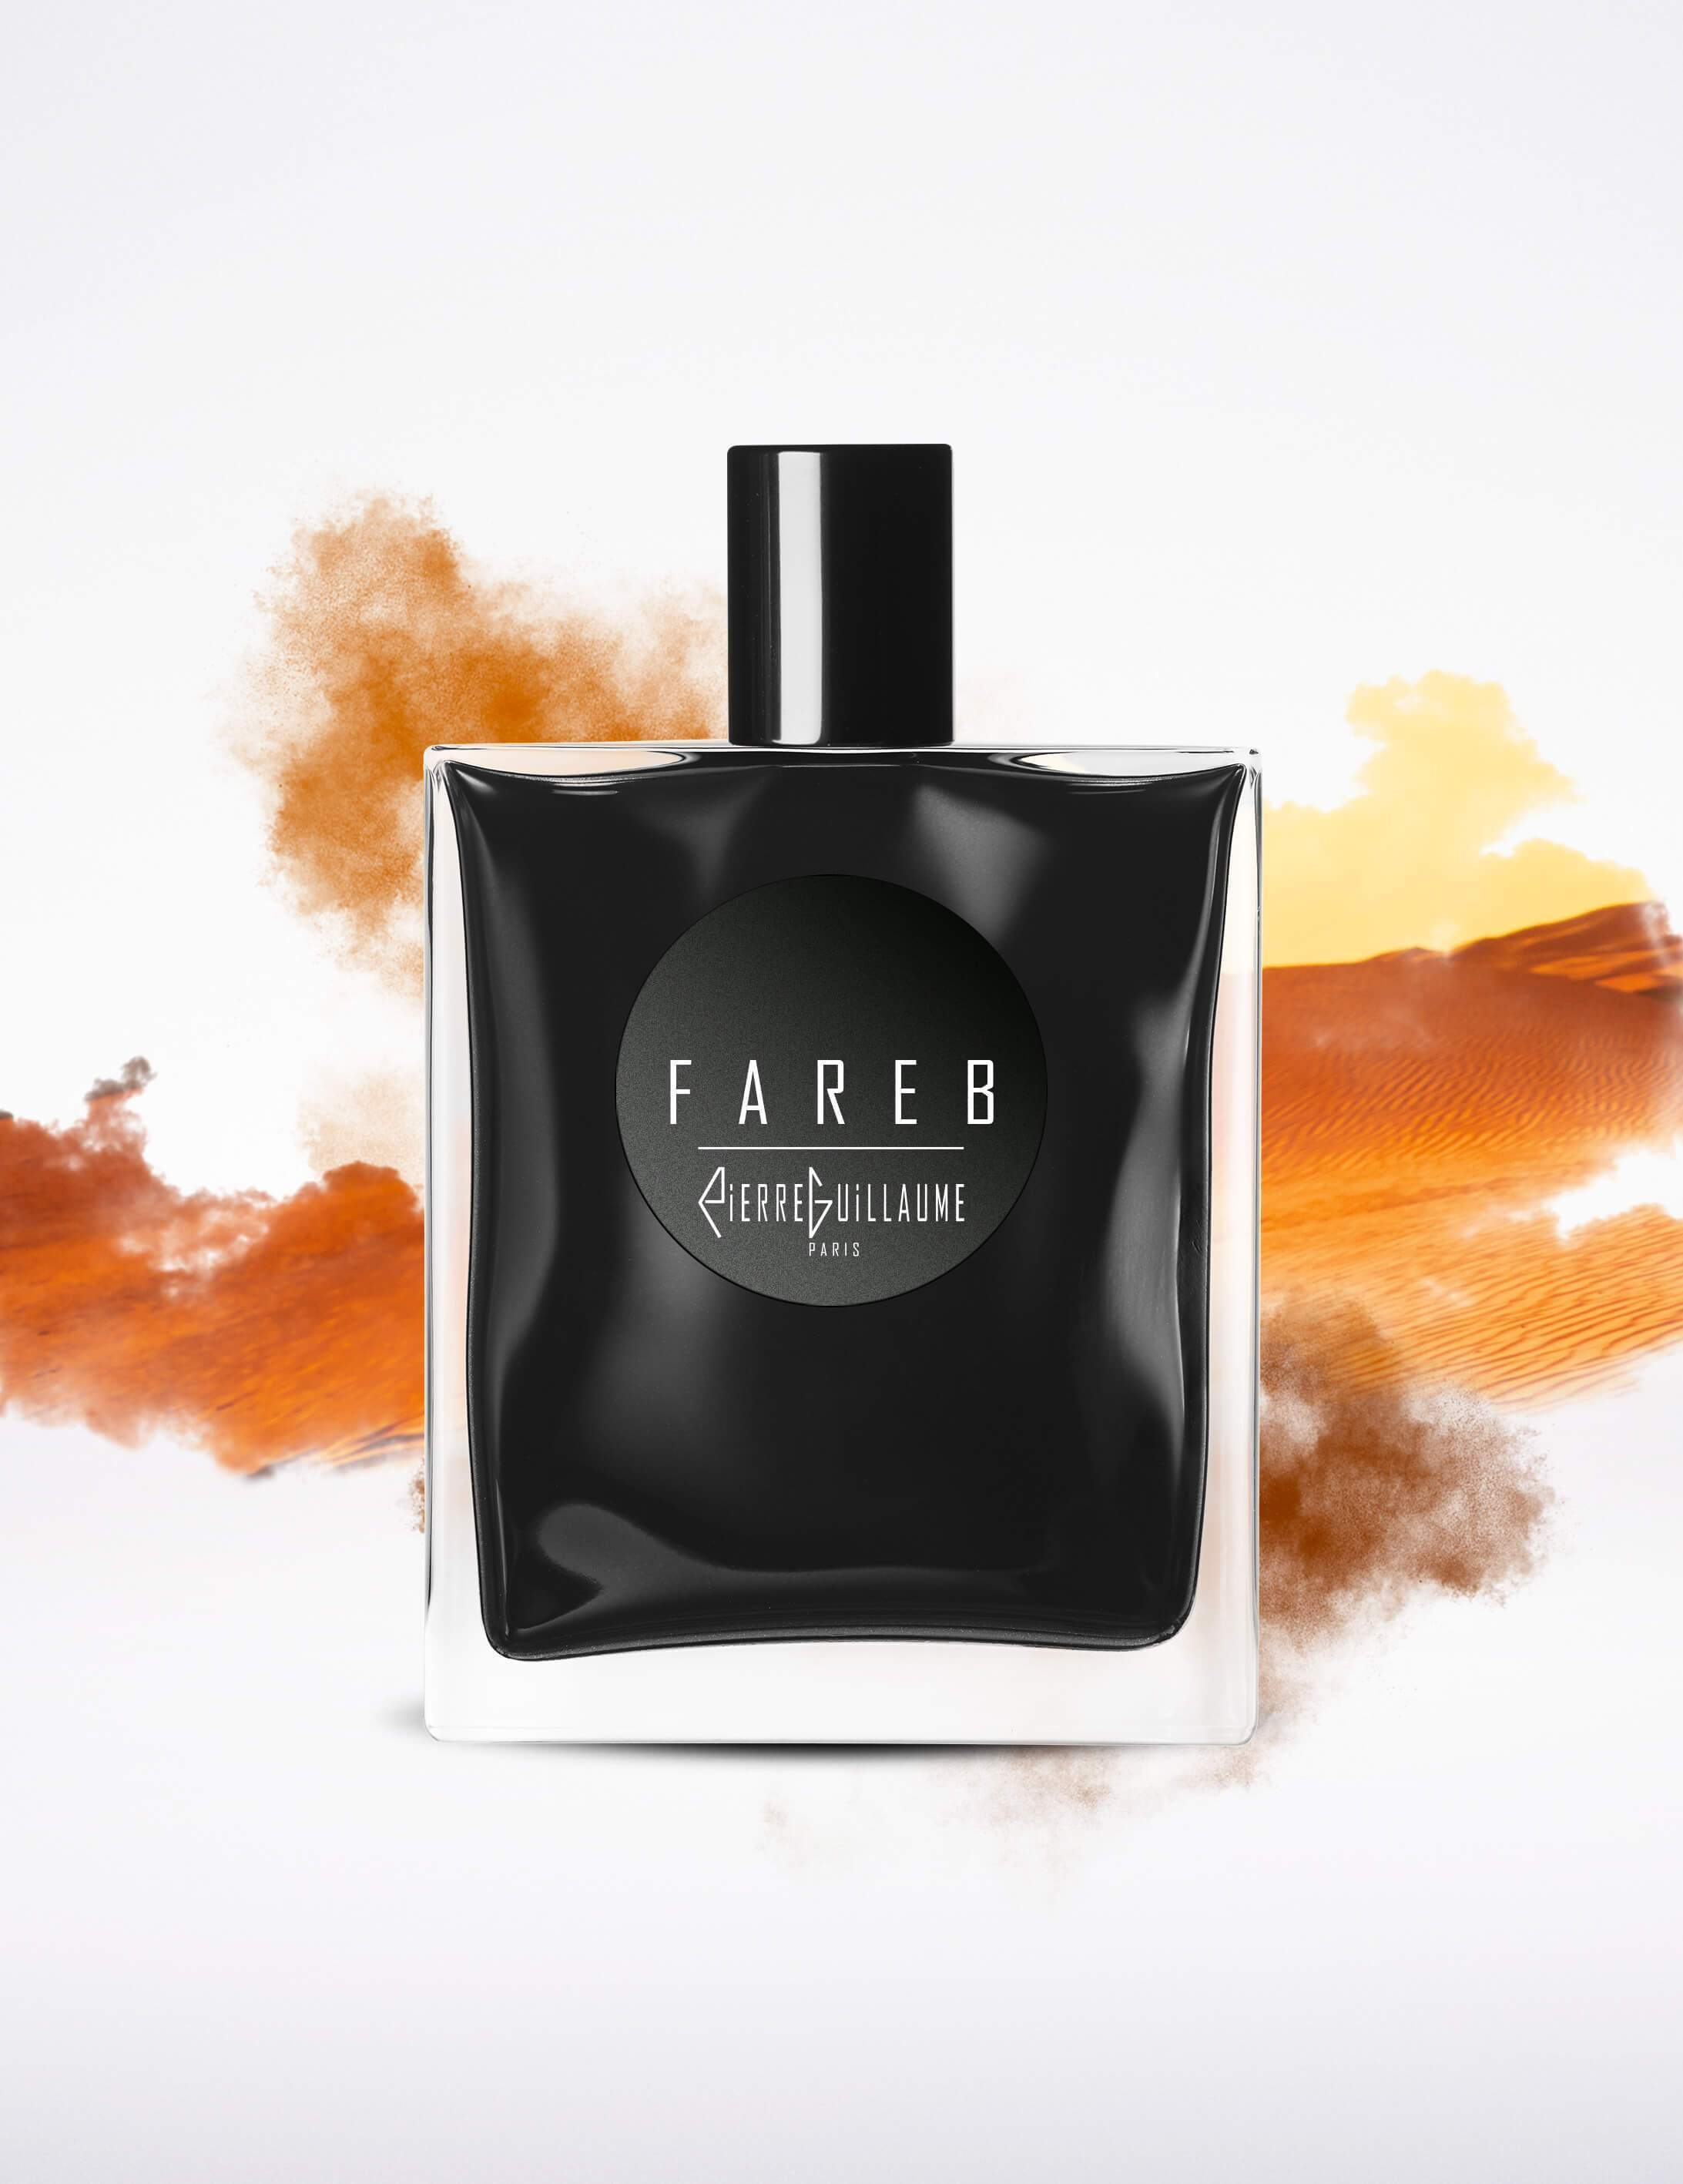 Fareb-eau de parfum-Pierre Guillaume - Noire-50 ml-Perfume Lounge